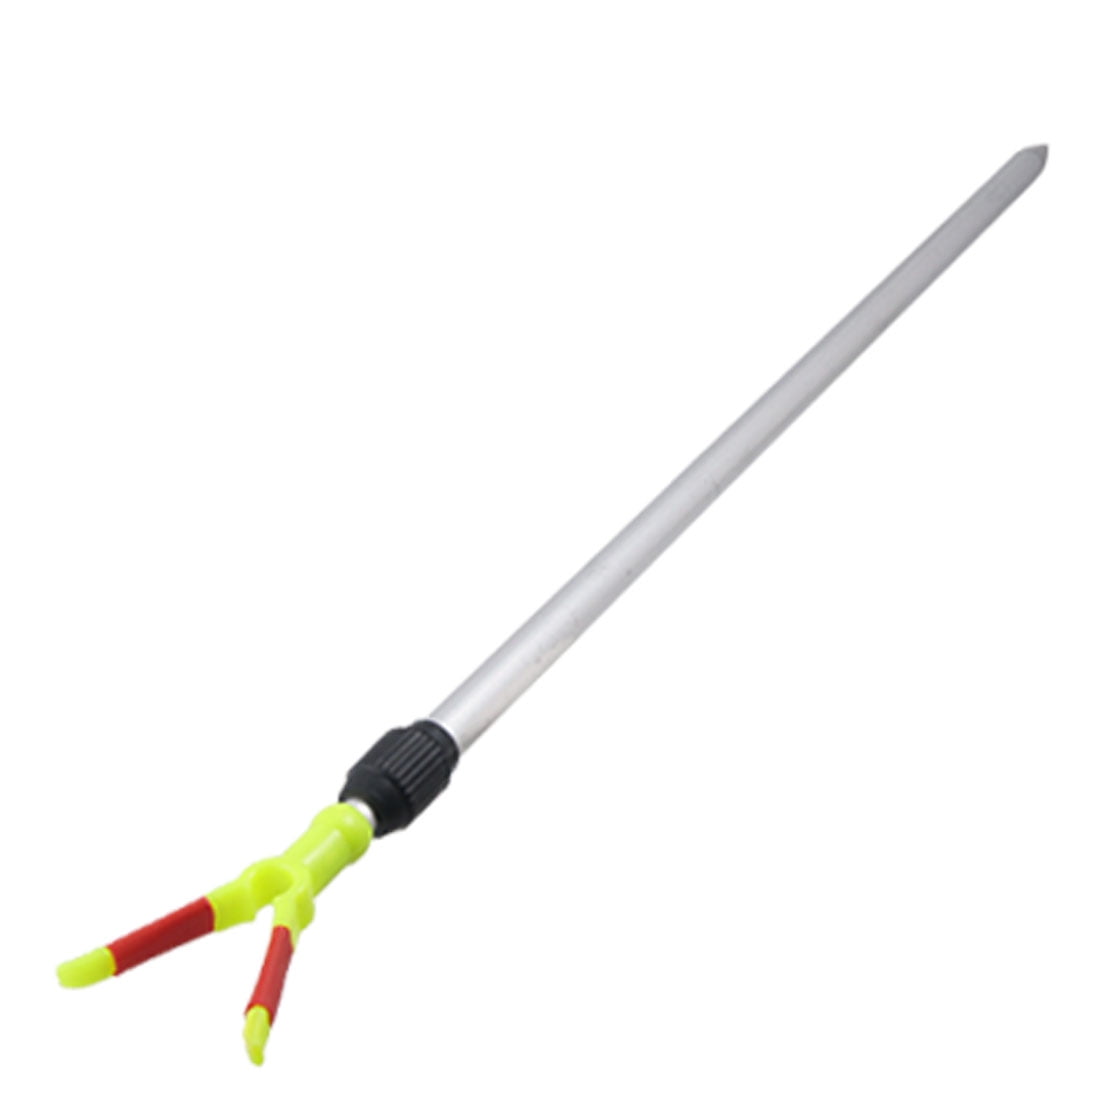 Unique Bargains Plastic Aluminum Adjustable Fishing Rod 